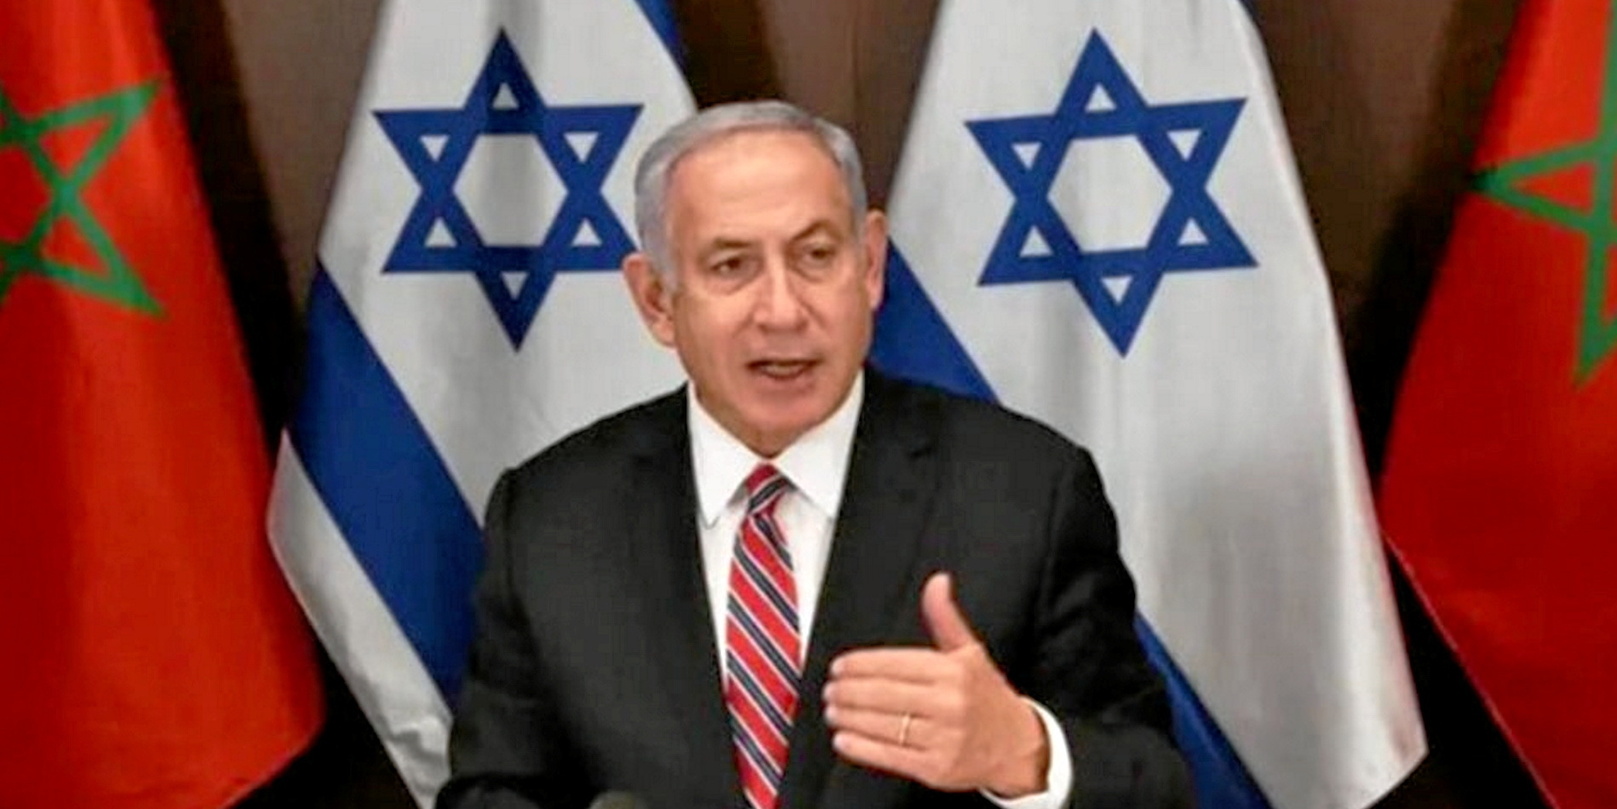 Assistons-nous à une fuite en avant du gouvernement Netanyahu